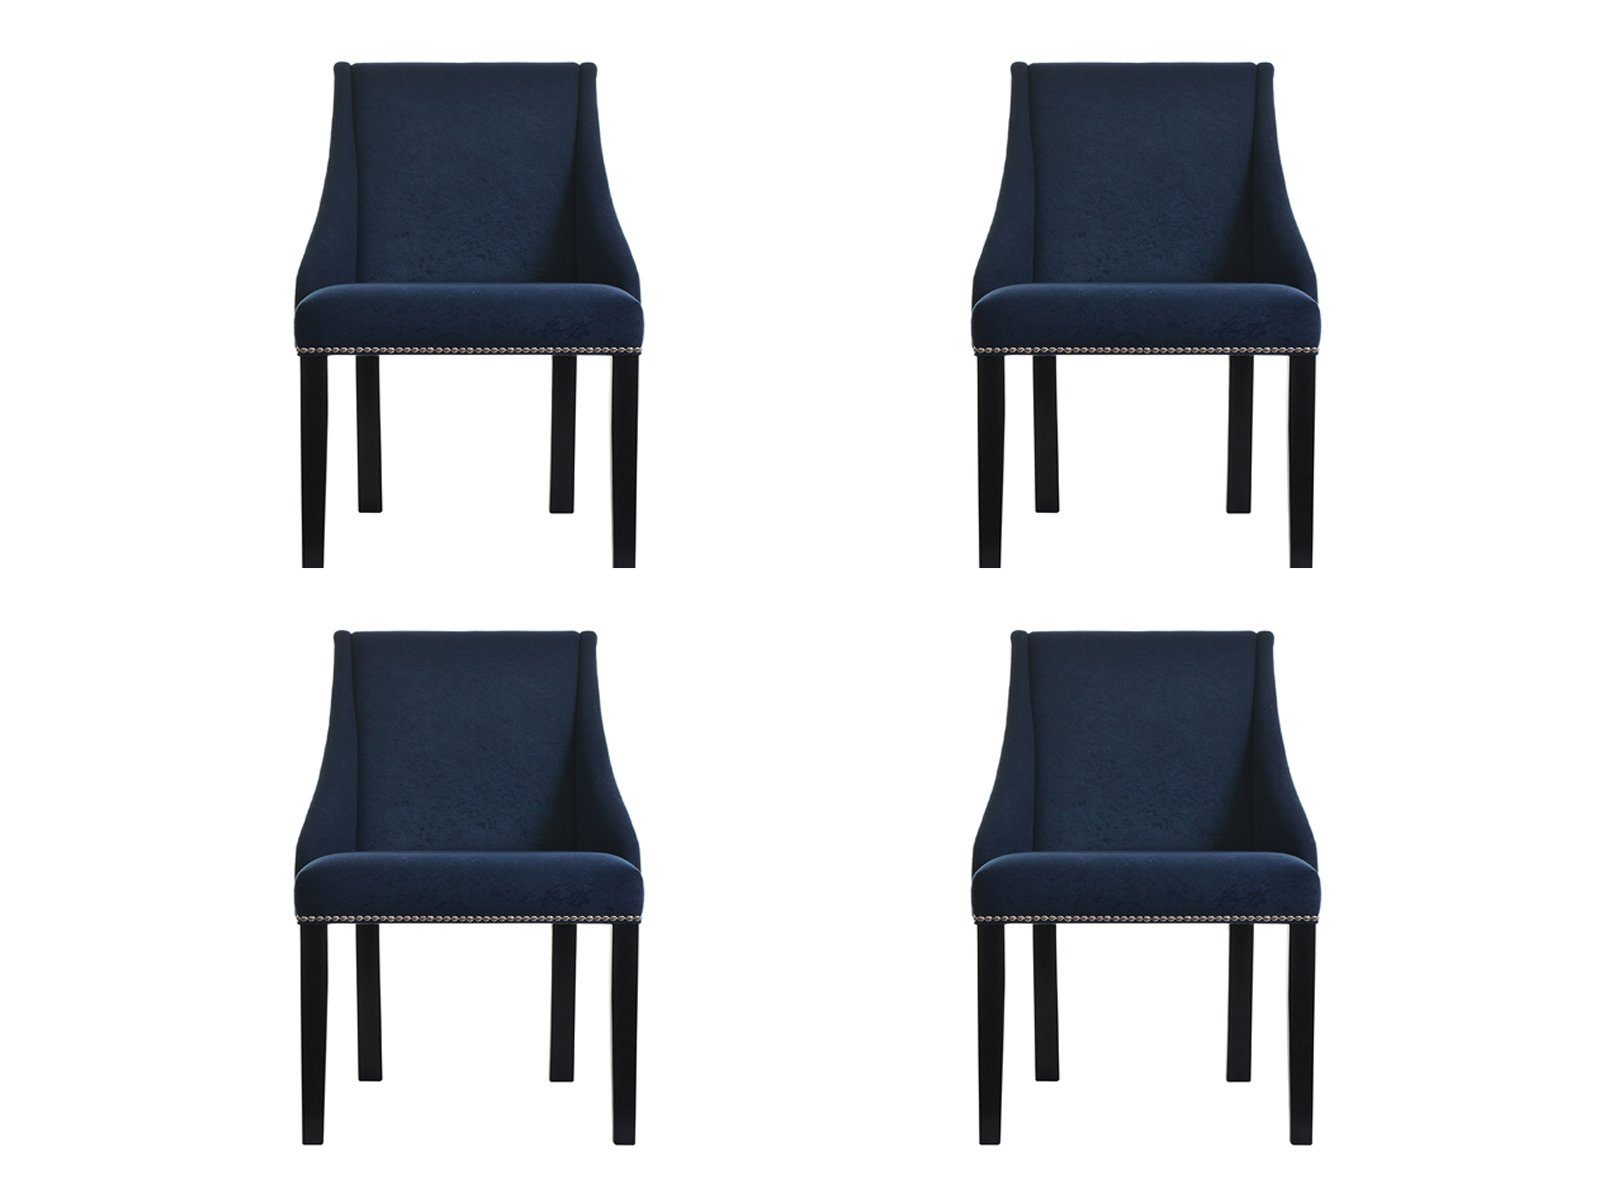 JVmoebel Stuhl, 4x Polster Lehn Design Leder Stühle Chesterfield Flora Sessel Klassische Stuhl